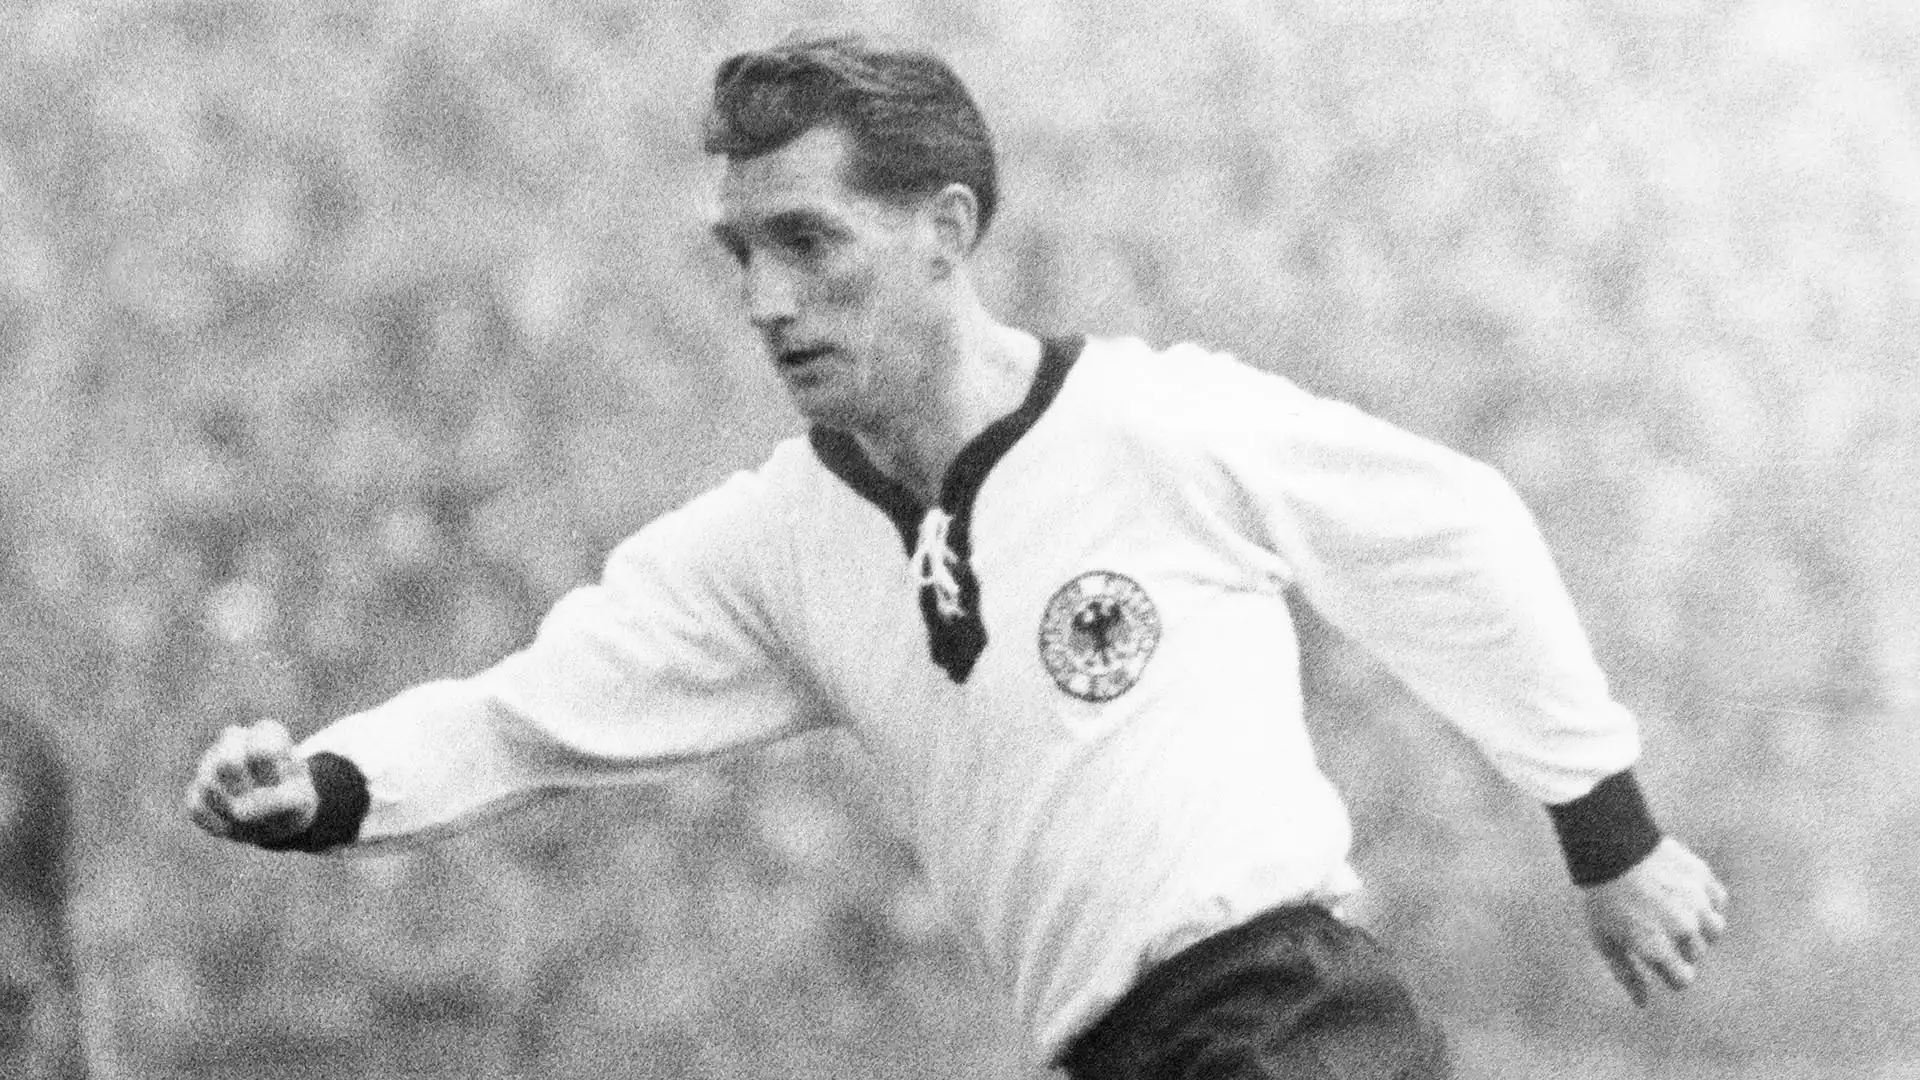 9- Fritz Walter disputò con la nazionale della Germania Ovest 61 partite e realizzò 33 gol, vincendo il campionato del mondo 1954